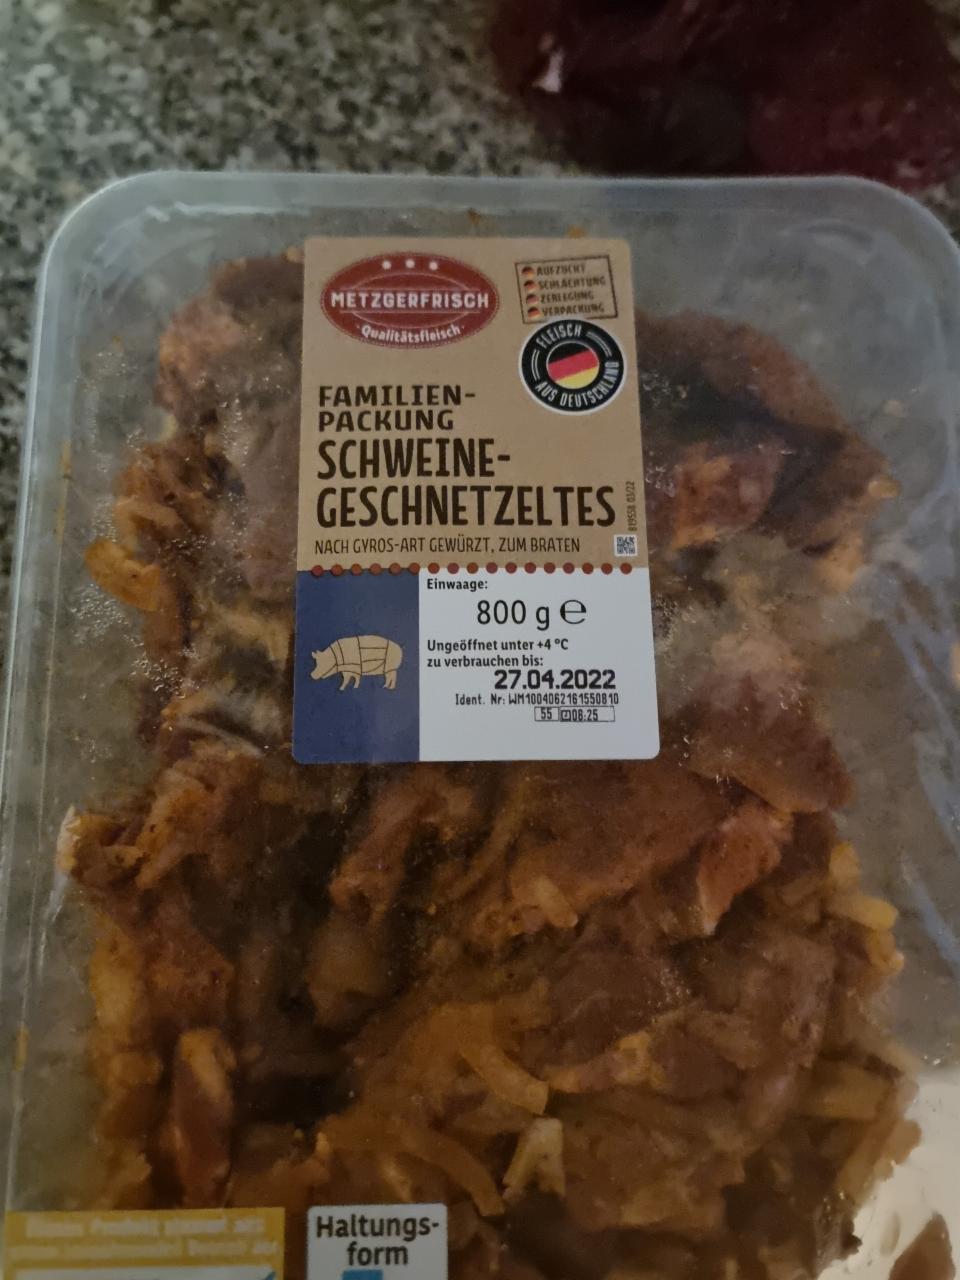 schweine-geschnetzeltes kJ nutričné kalórie, familien-packung a - hodnoty